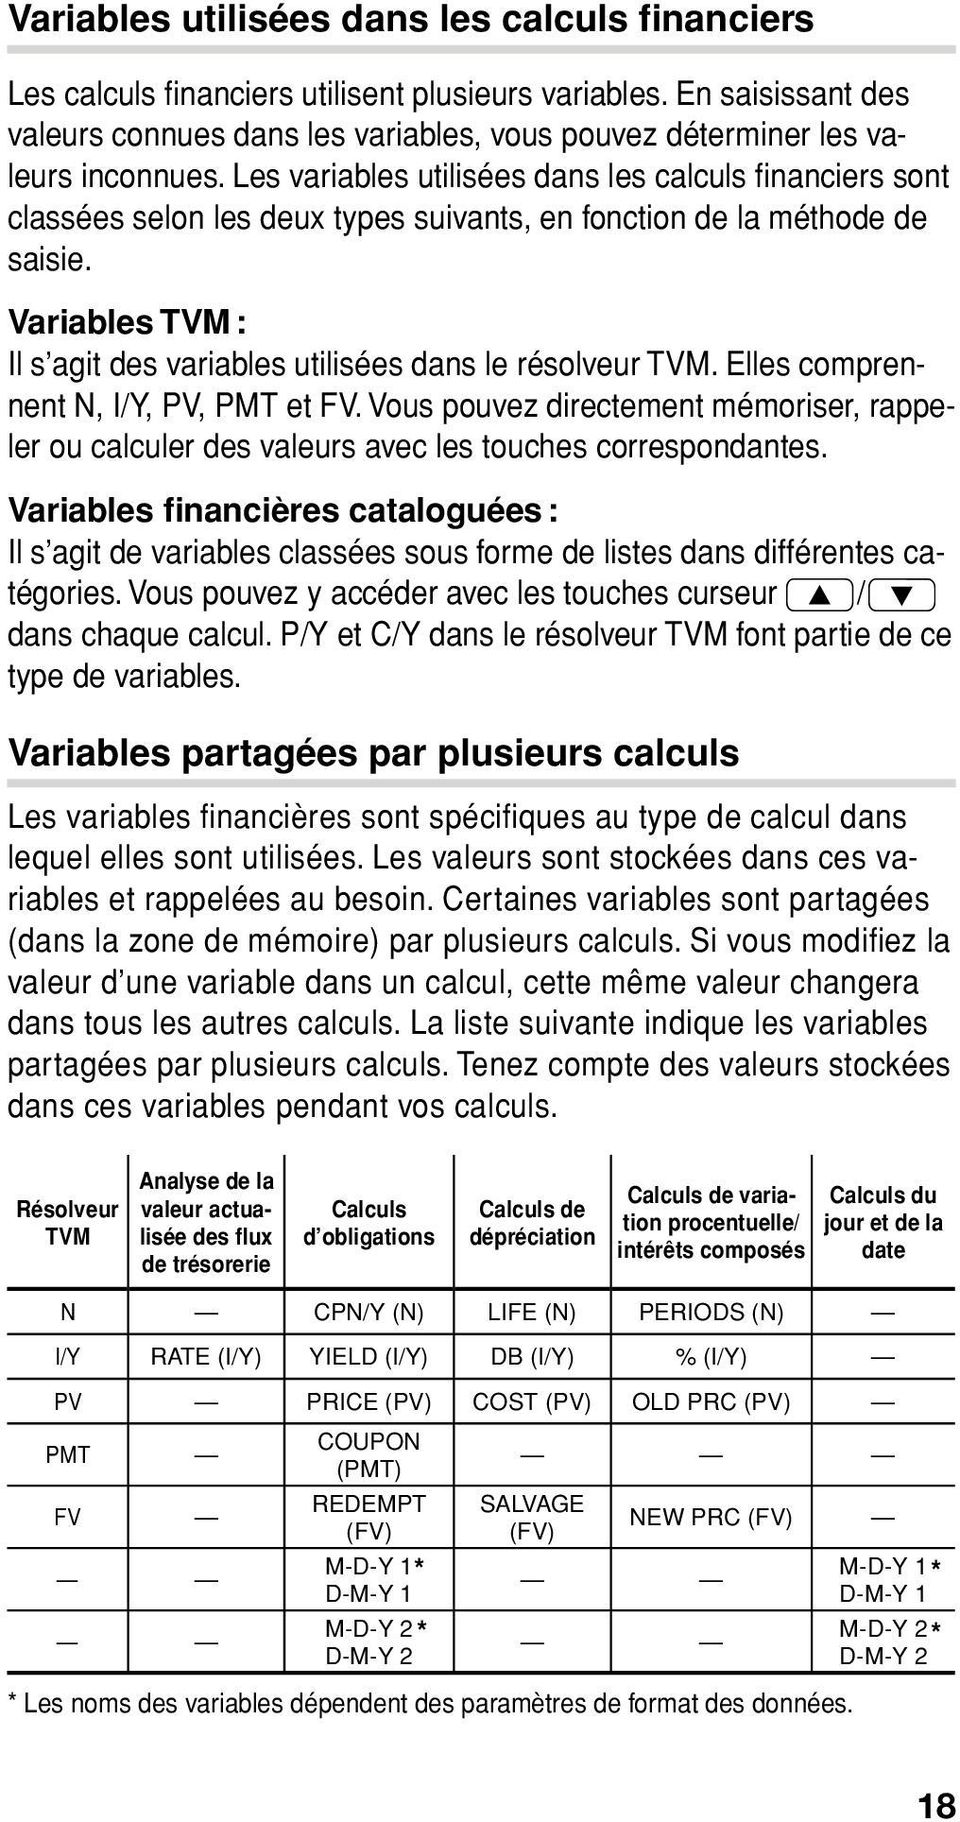 Les variables utilisées dans les calculs fi nanciers sont classées selon les deux types suivants, en fonction de la méthode de saisie.